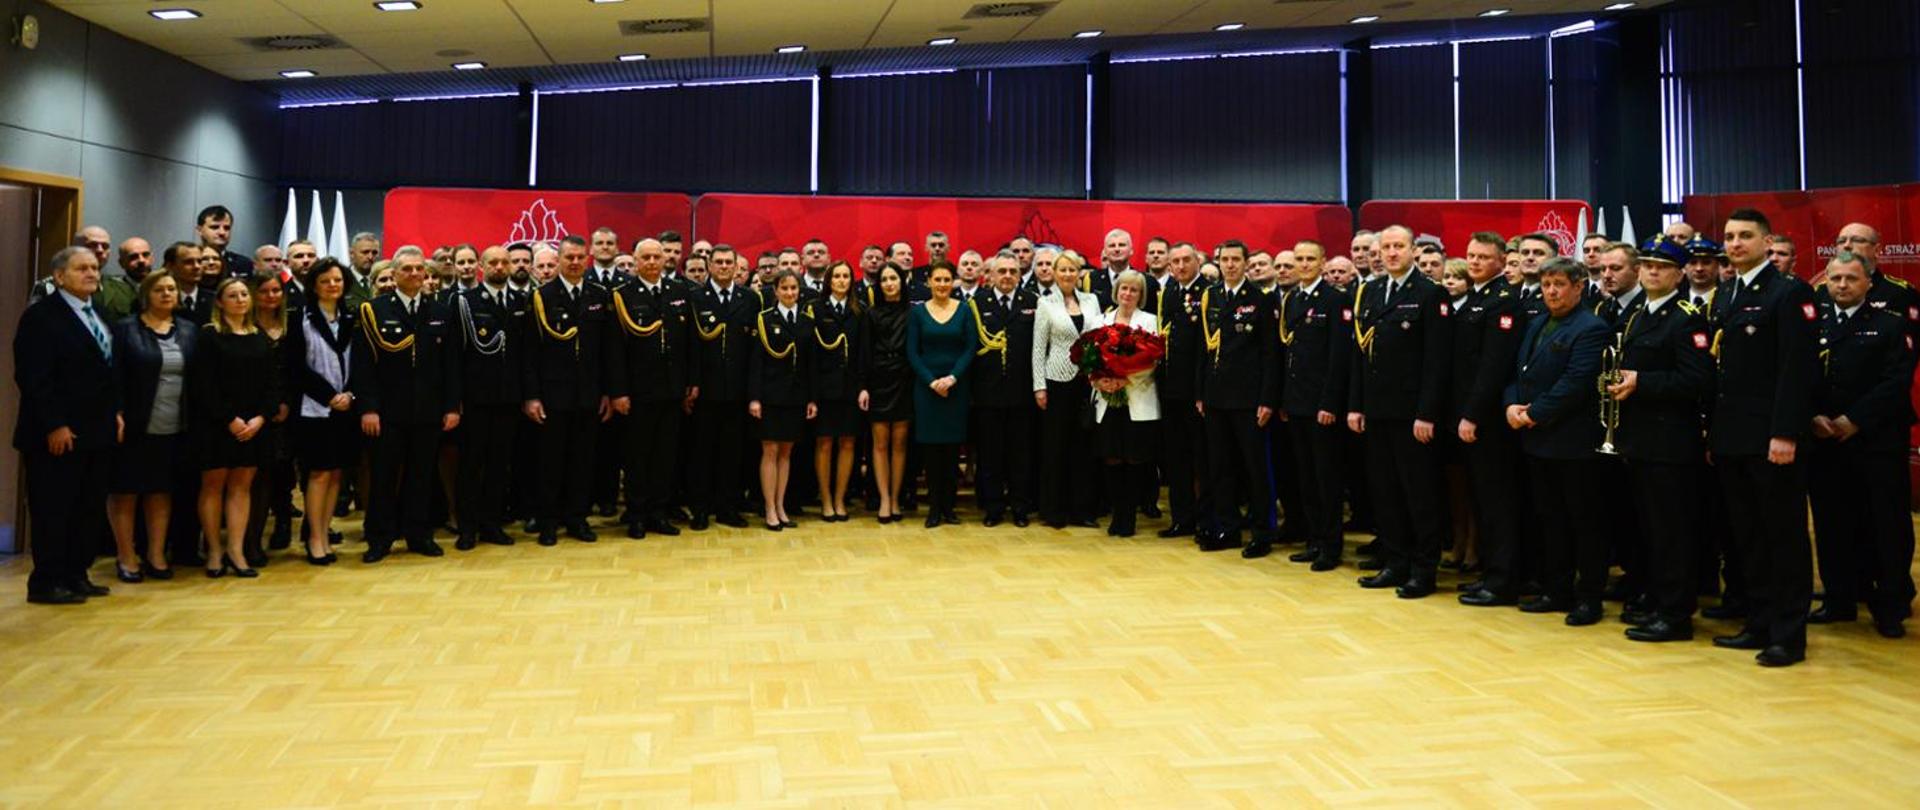 Uroczystość zdania i przyjęcia obowiązków na stanowisku Małopolskiego Komendanta Wojewódzkiego Państwowej Straży Pożarnej